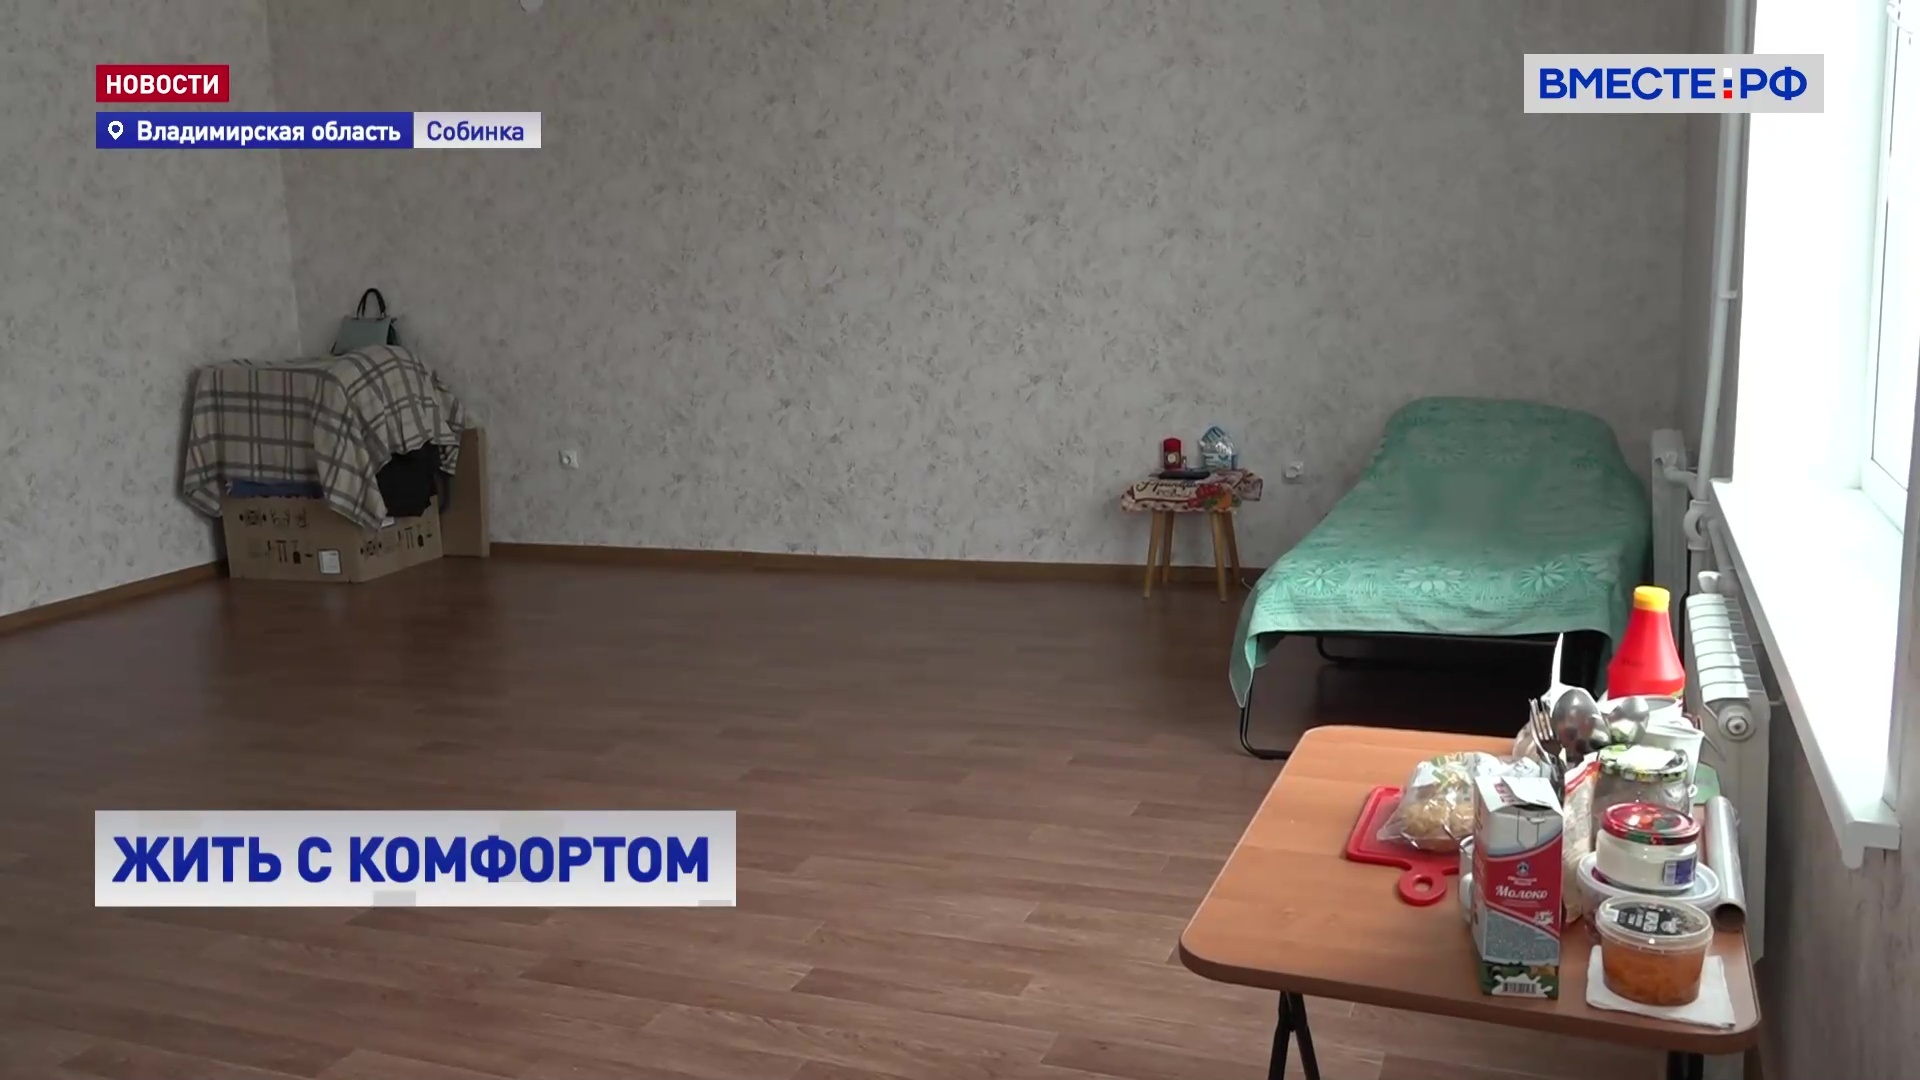 РЕПОРТАЖ: ситуация с переселением из аварийного жилья во Владимирской области 